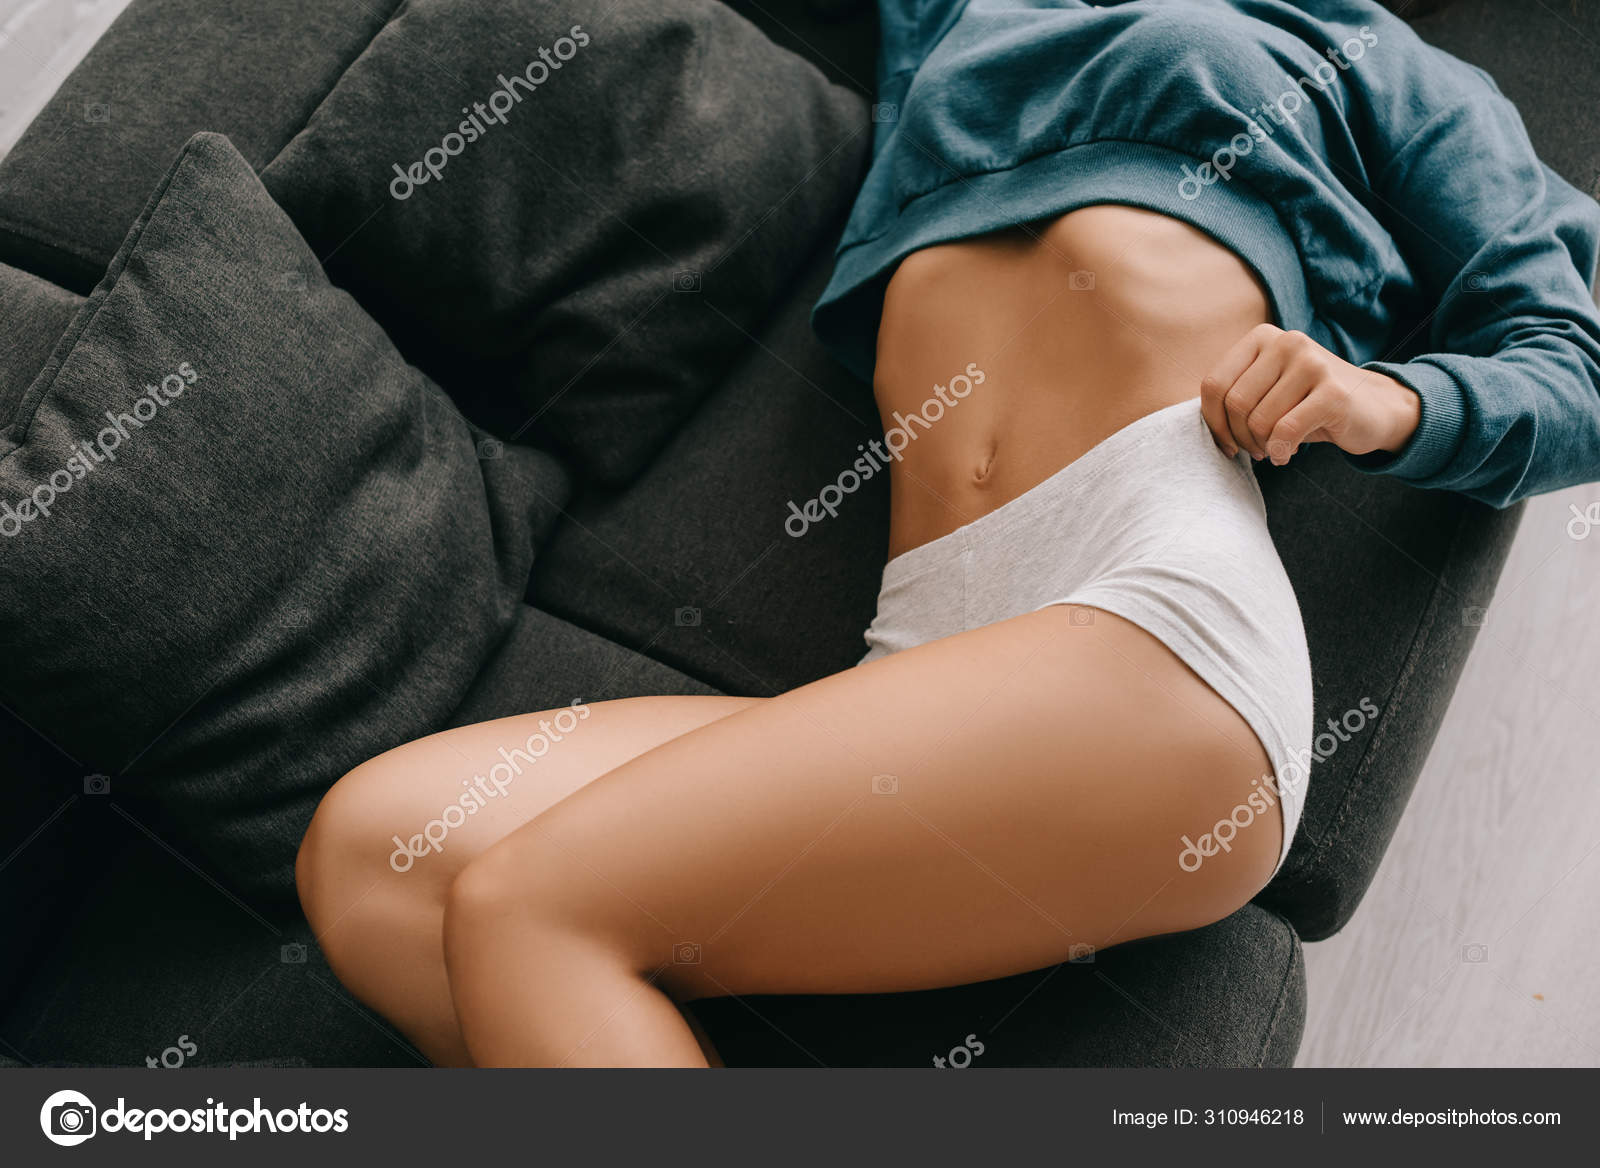 Жена лежит на диване стянув с себя майку и трусы фото